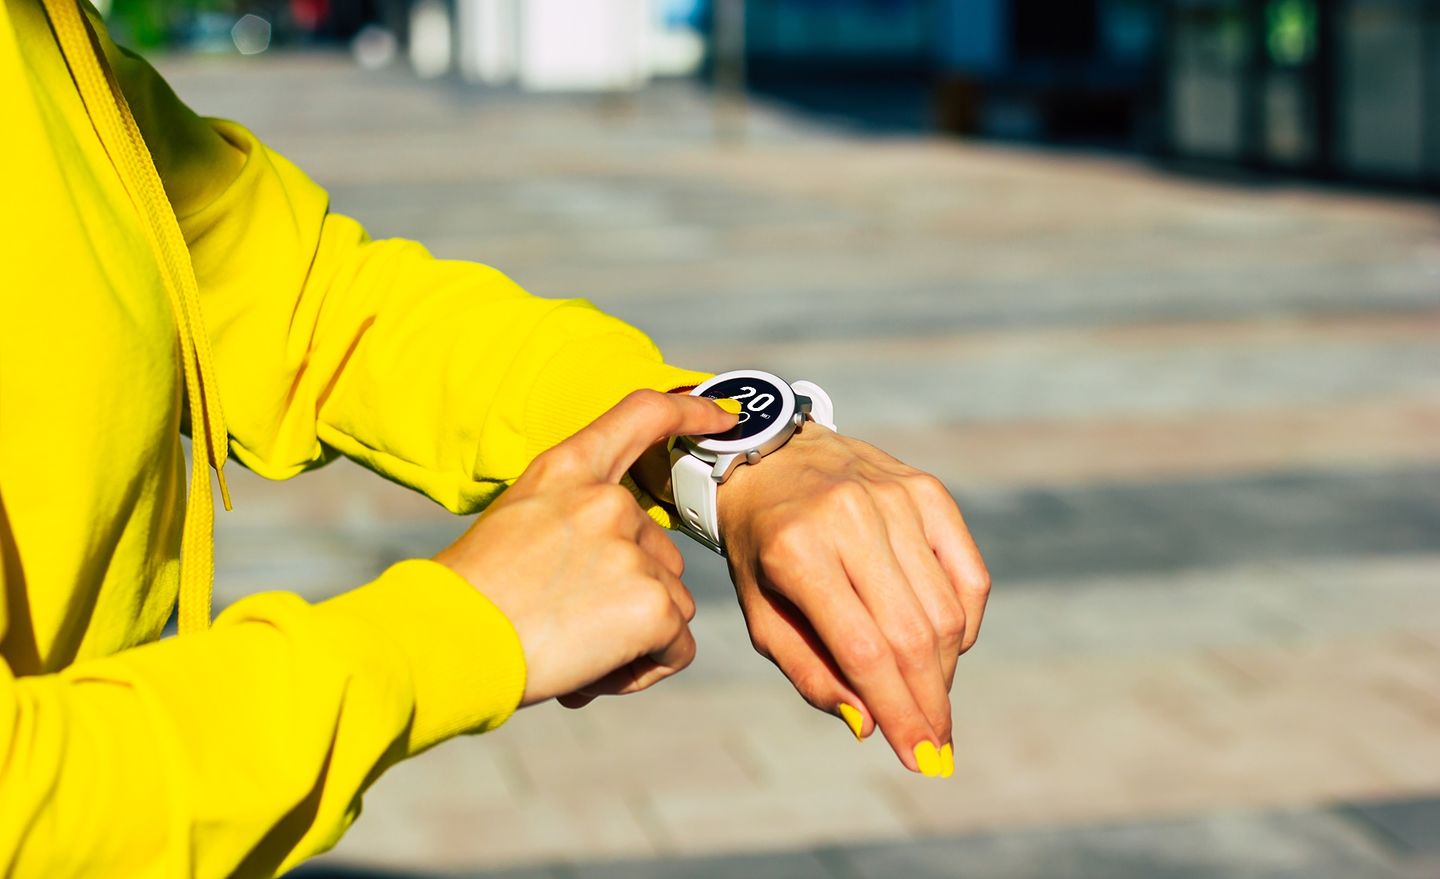 Eine Studierende im gelben Sweatshirt deutet mit dem rechten Zeigefinger auf ihre Smartwatch am linken Handgelenk. Die Smartwatch zeigt ein Datum an. Foto: © Povozniuk/Getty Images/iStockphoto